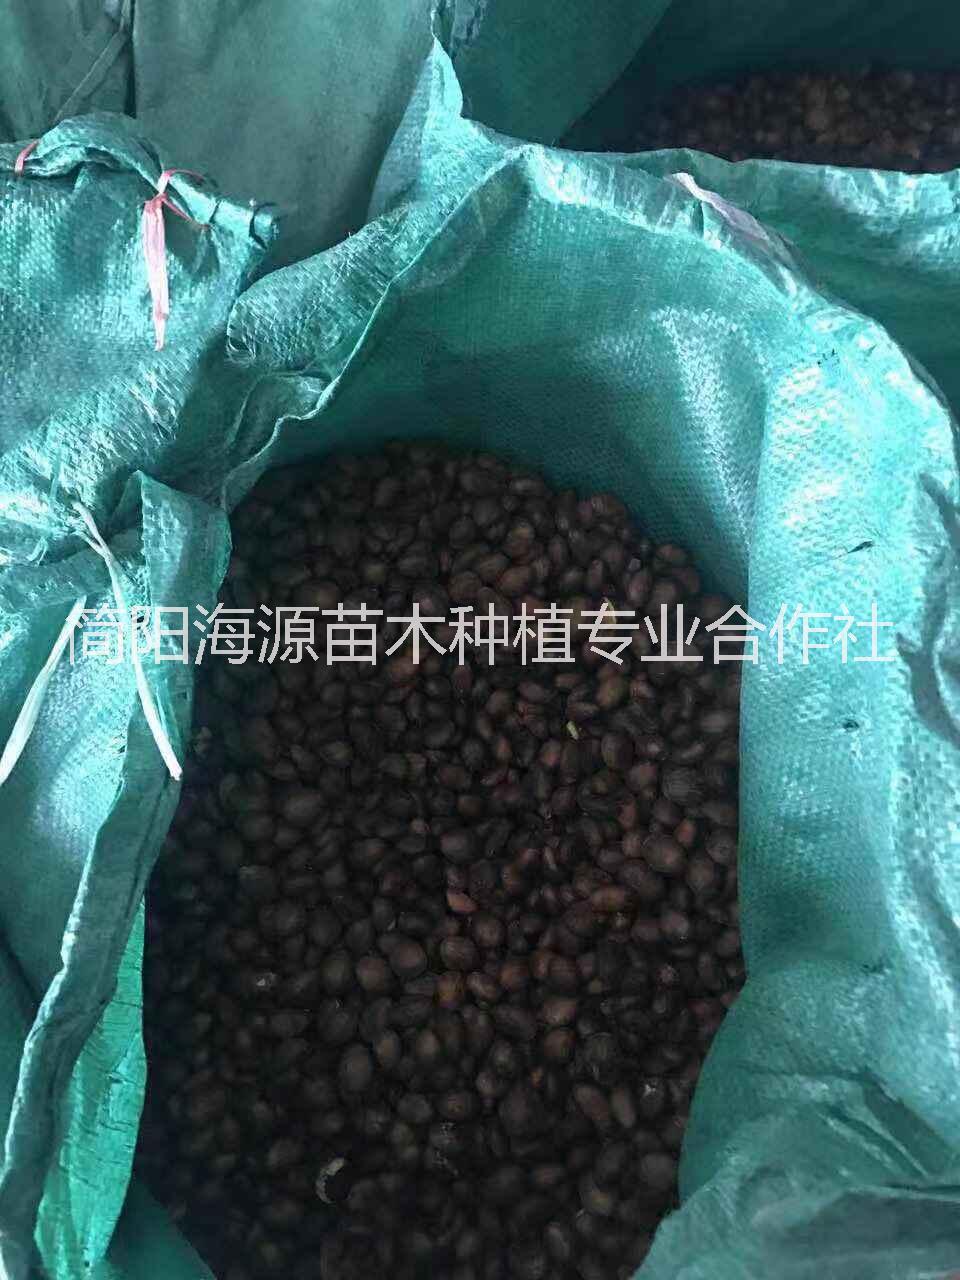 四川简阳高存活率枇杷种子批发价格 传授种植技术，海源苗木